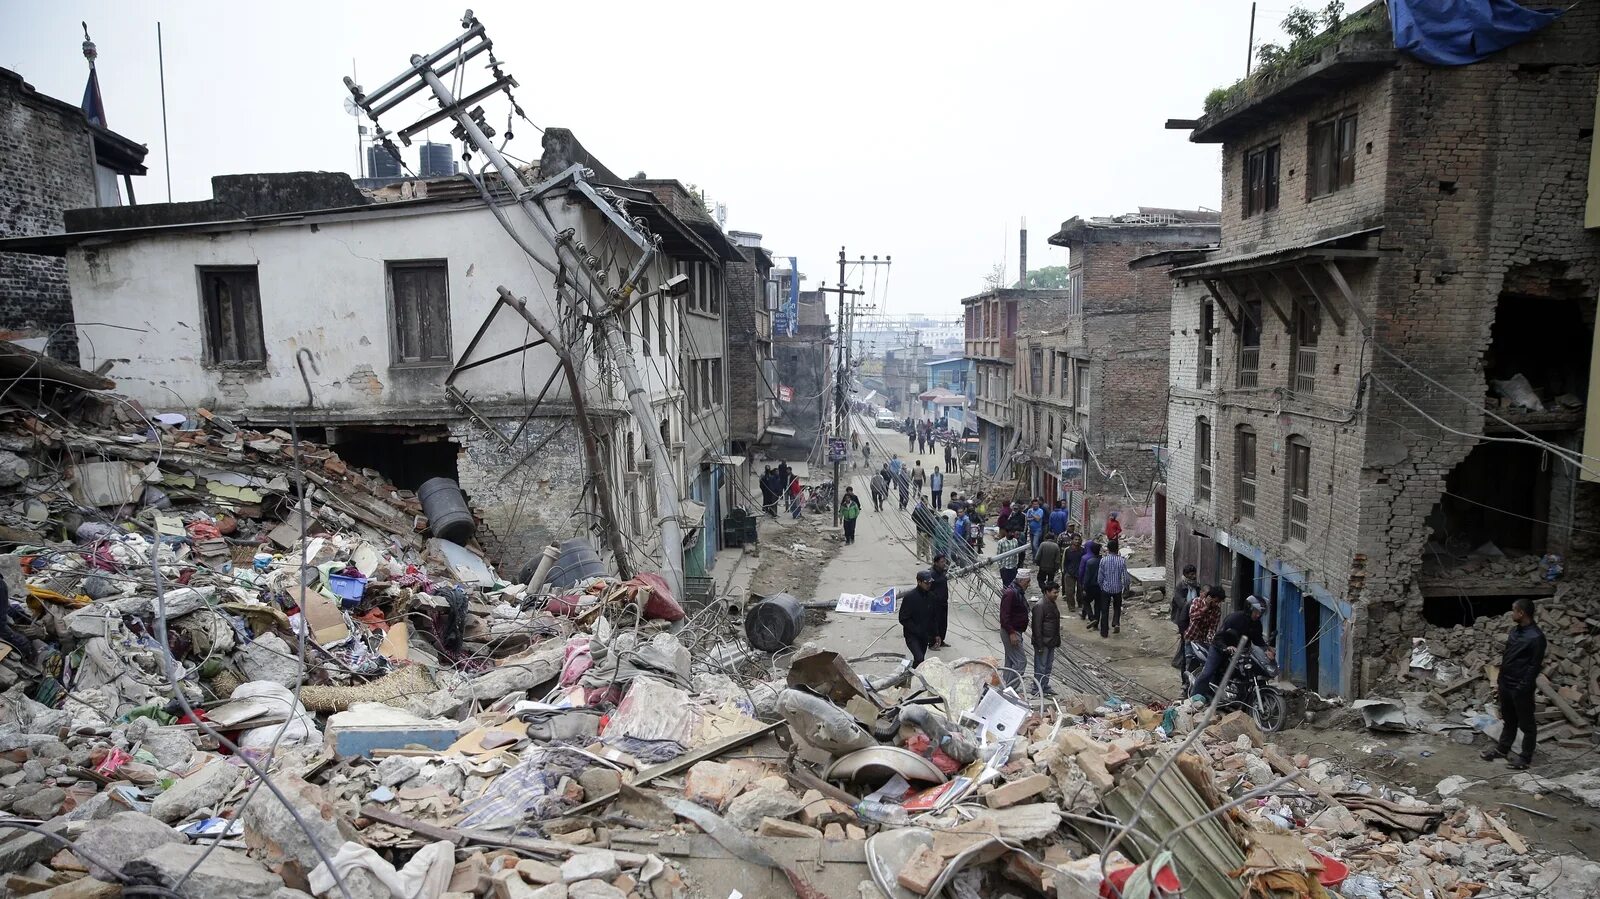 Финляндия землетрясения. Землетрясение в Непале 2015. Непал, 25 апреля 2015 года: 8000 погибших. Непал 2015 землетрясение 25 апреля. Катманду землетрясение.